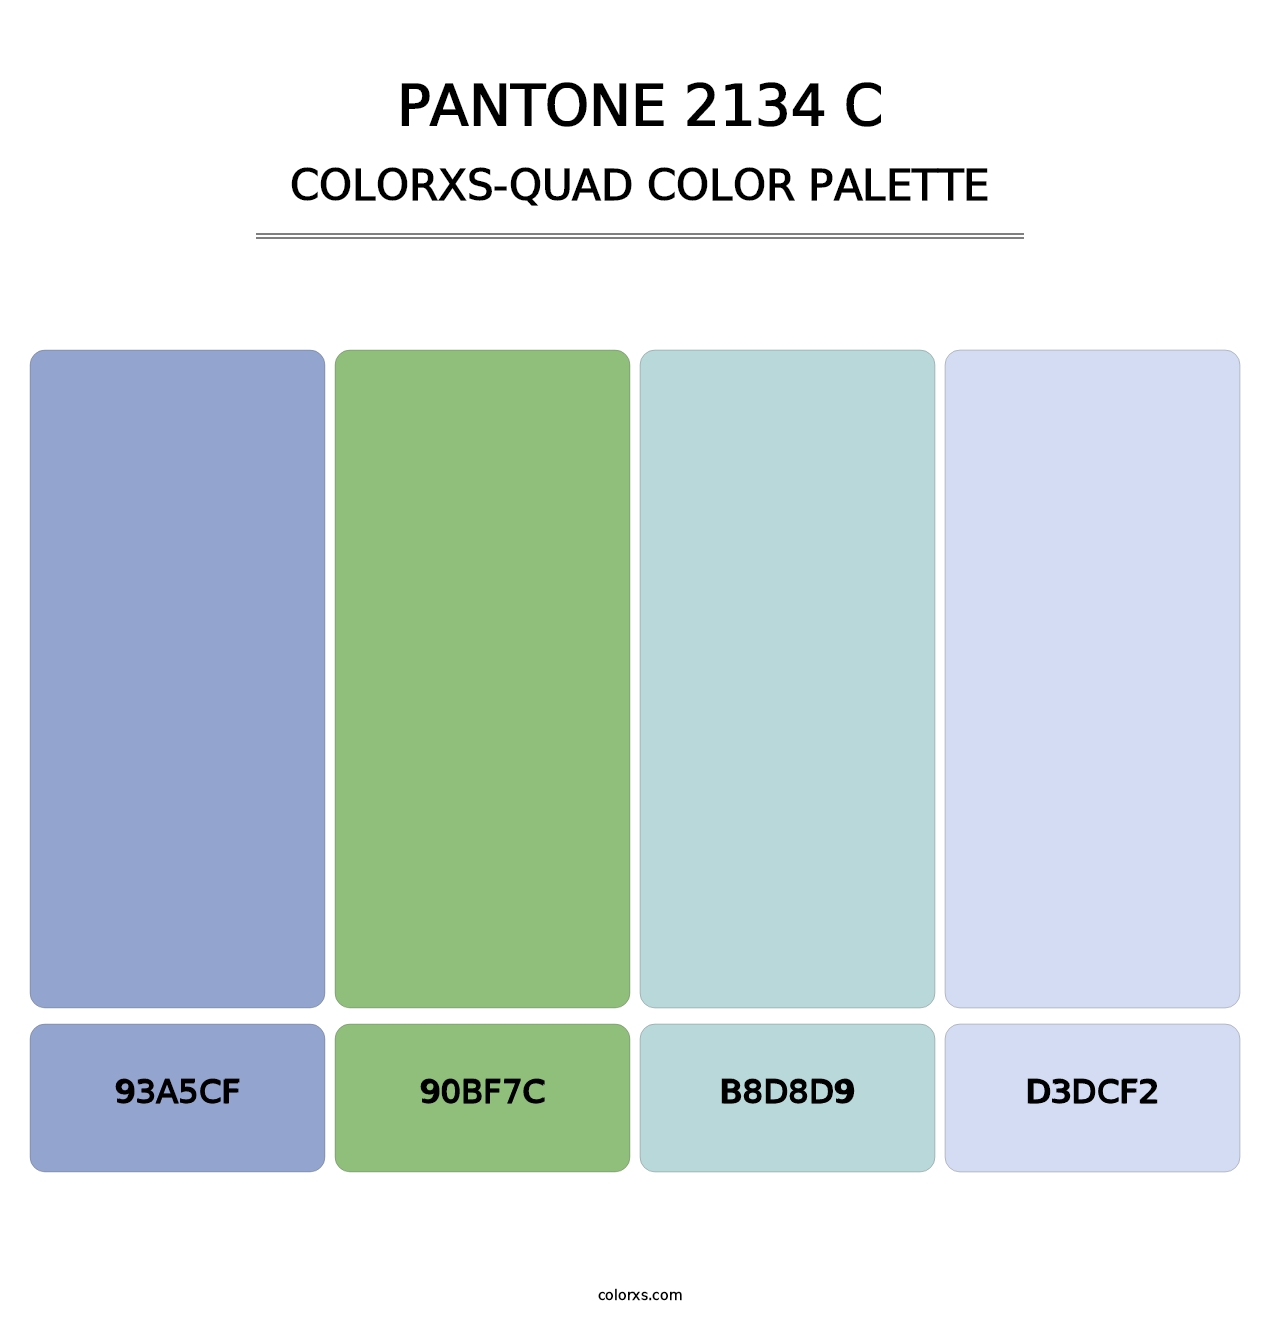 PANTONE 2134 C - Colorxs Quad Palette